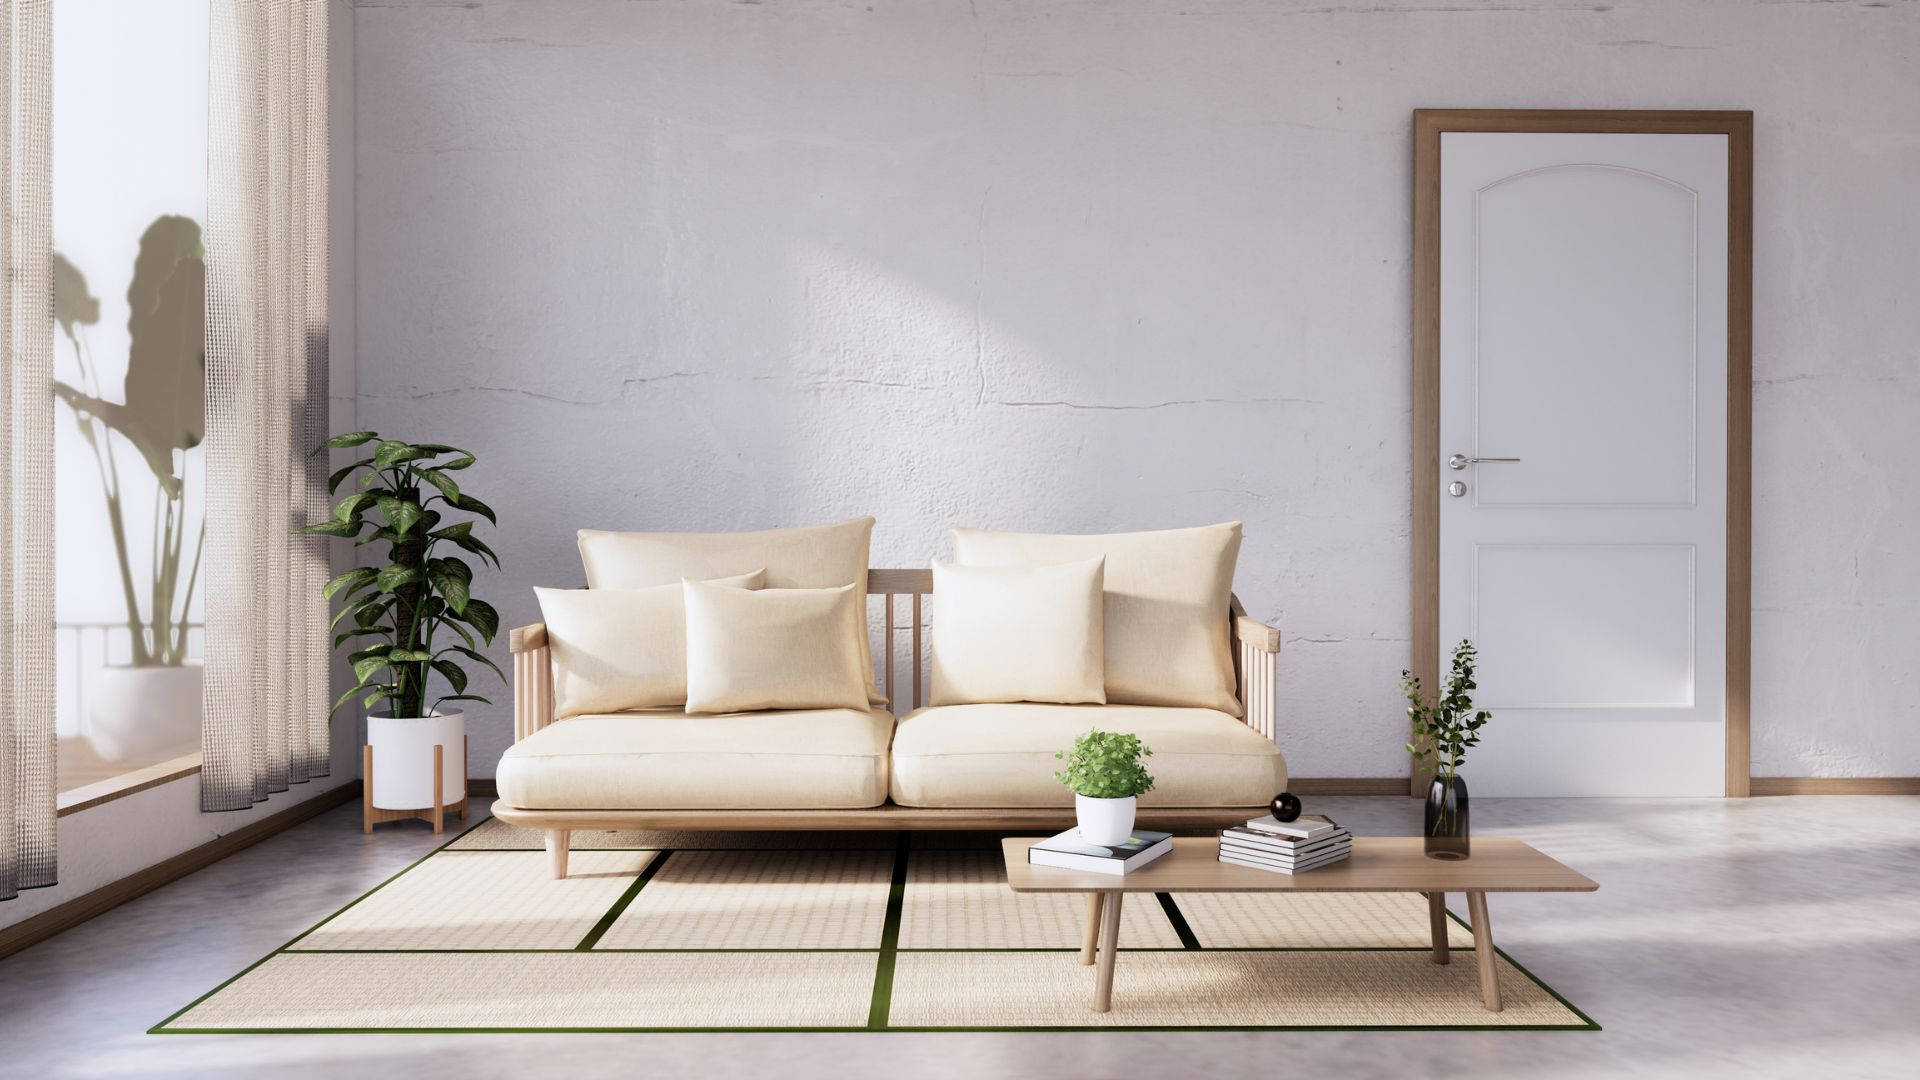 Stylish Modern Japanese-style Furniture Background